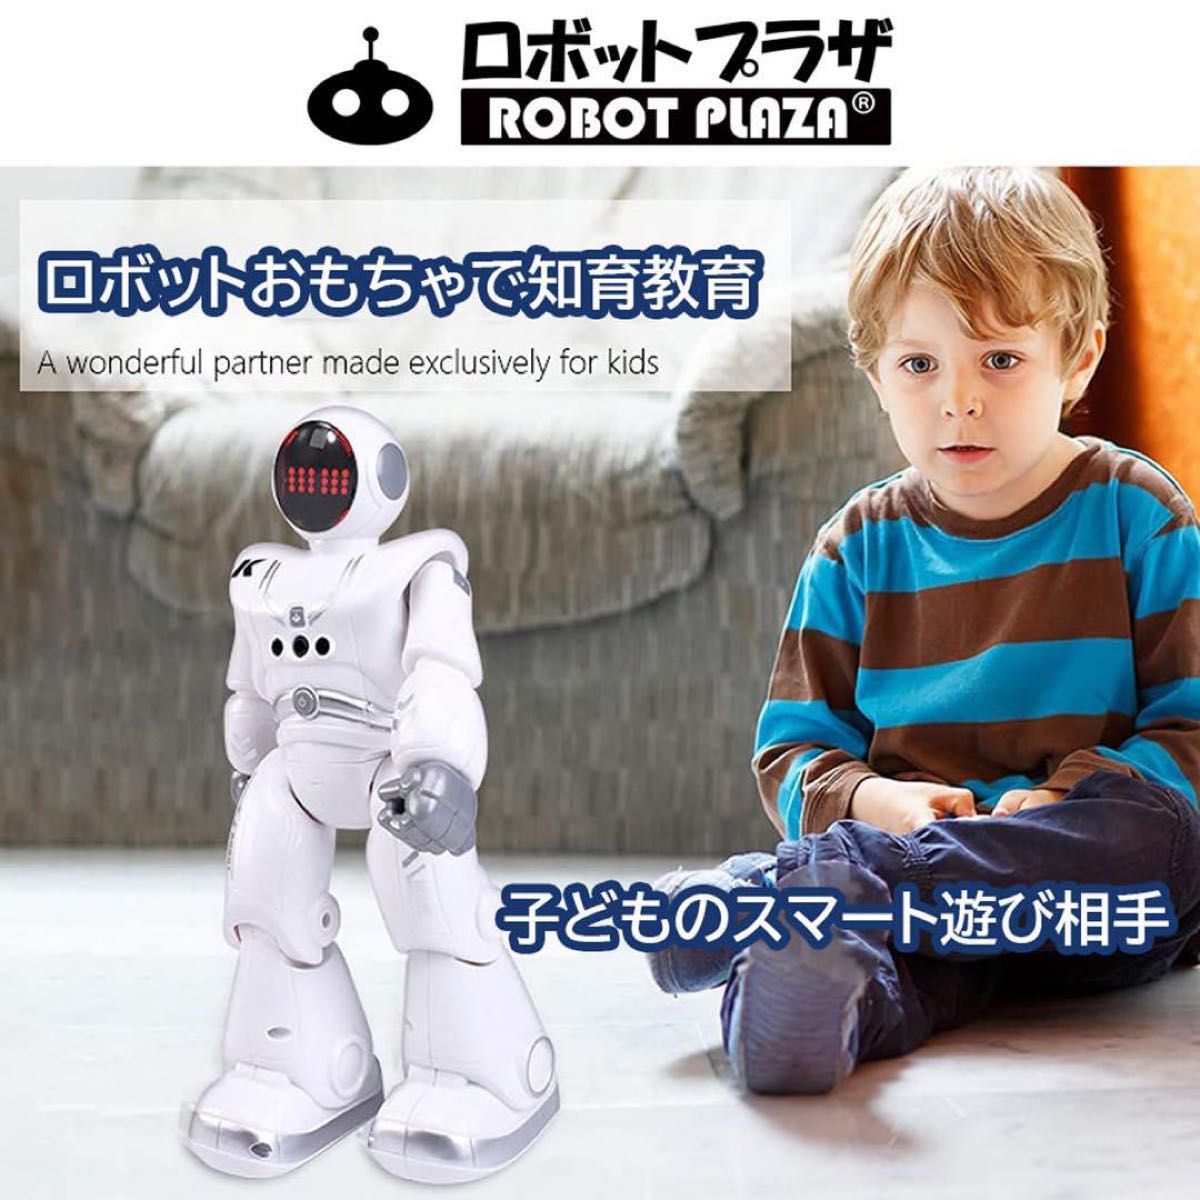 ロボットプラザ (ROBOT PLAZA) 人型ロボット おもちゃ 歩く 男の子 トイ ロボット